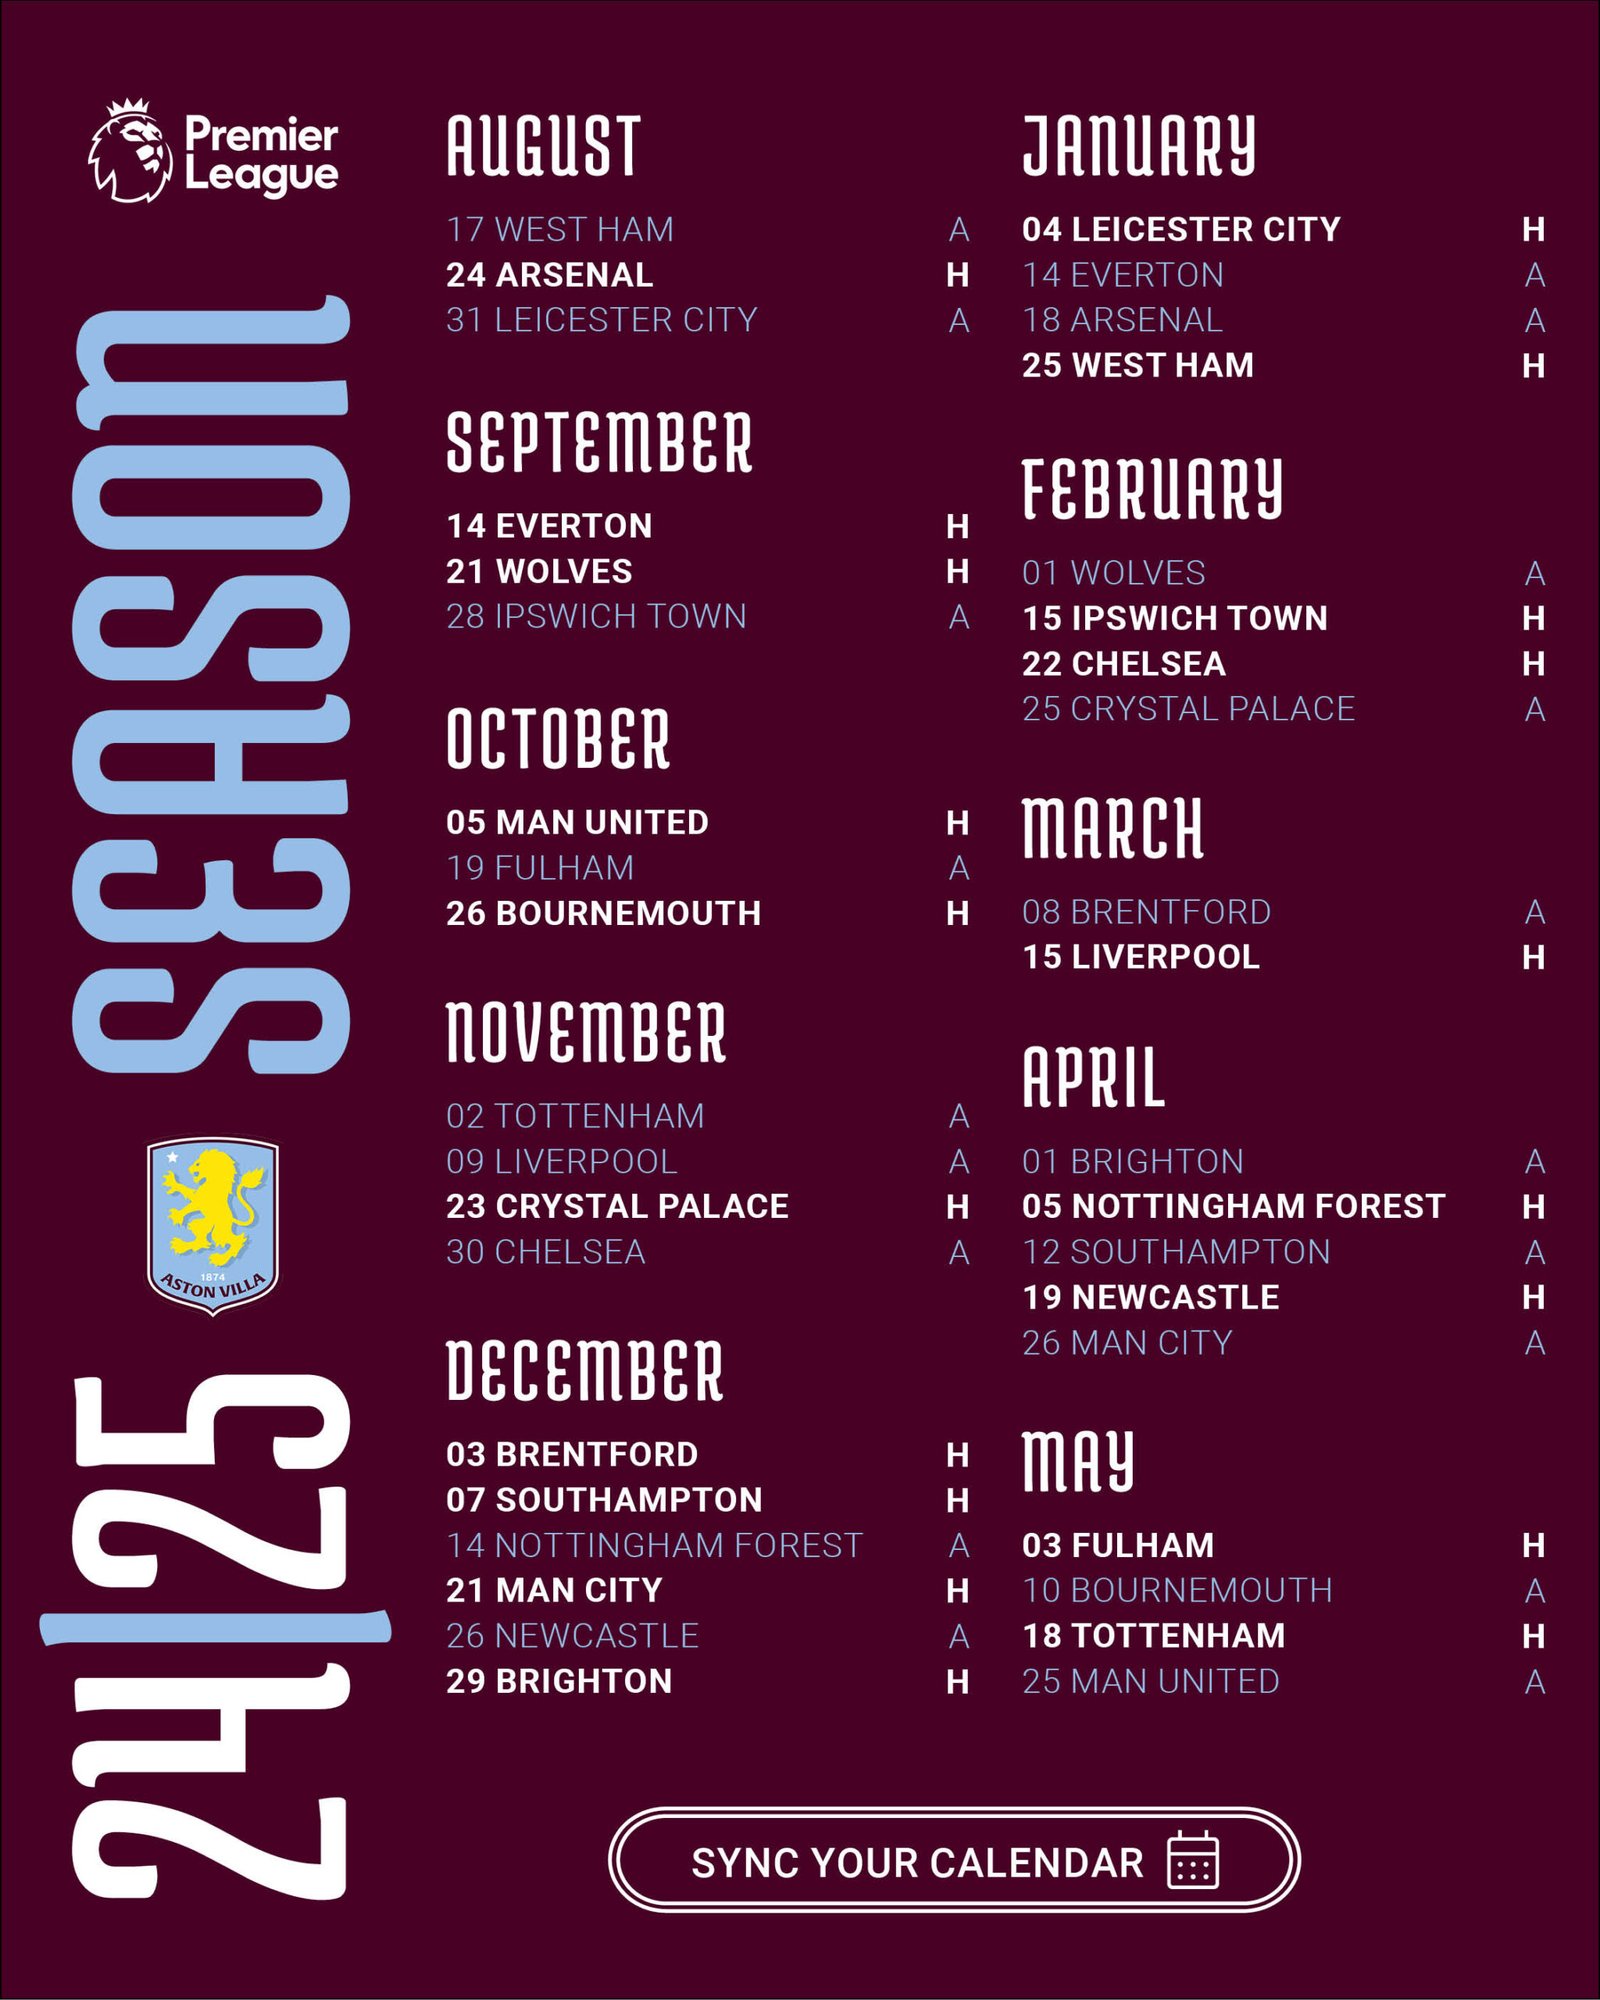 جدول مواعيد مباريات الدوري الإنجليزي2024-2025 